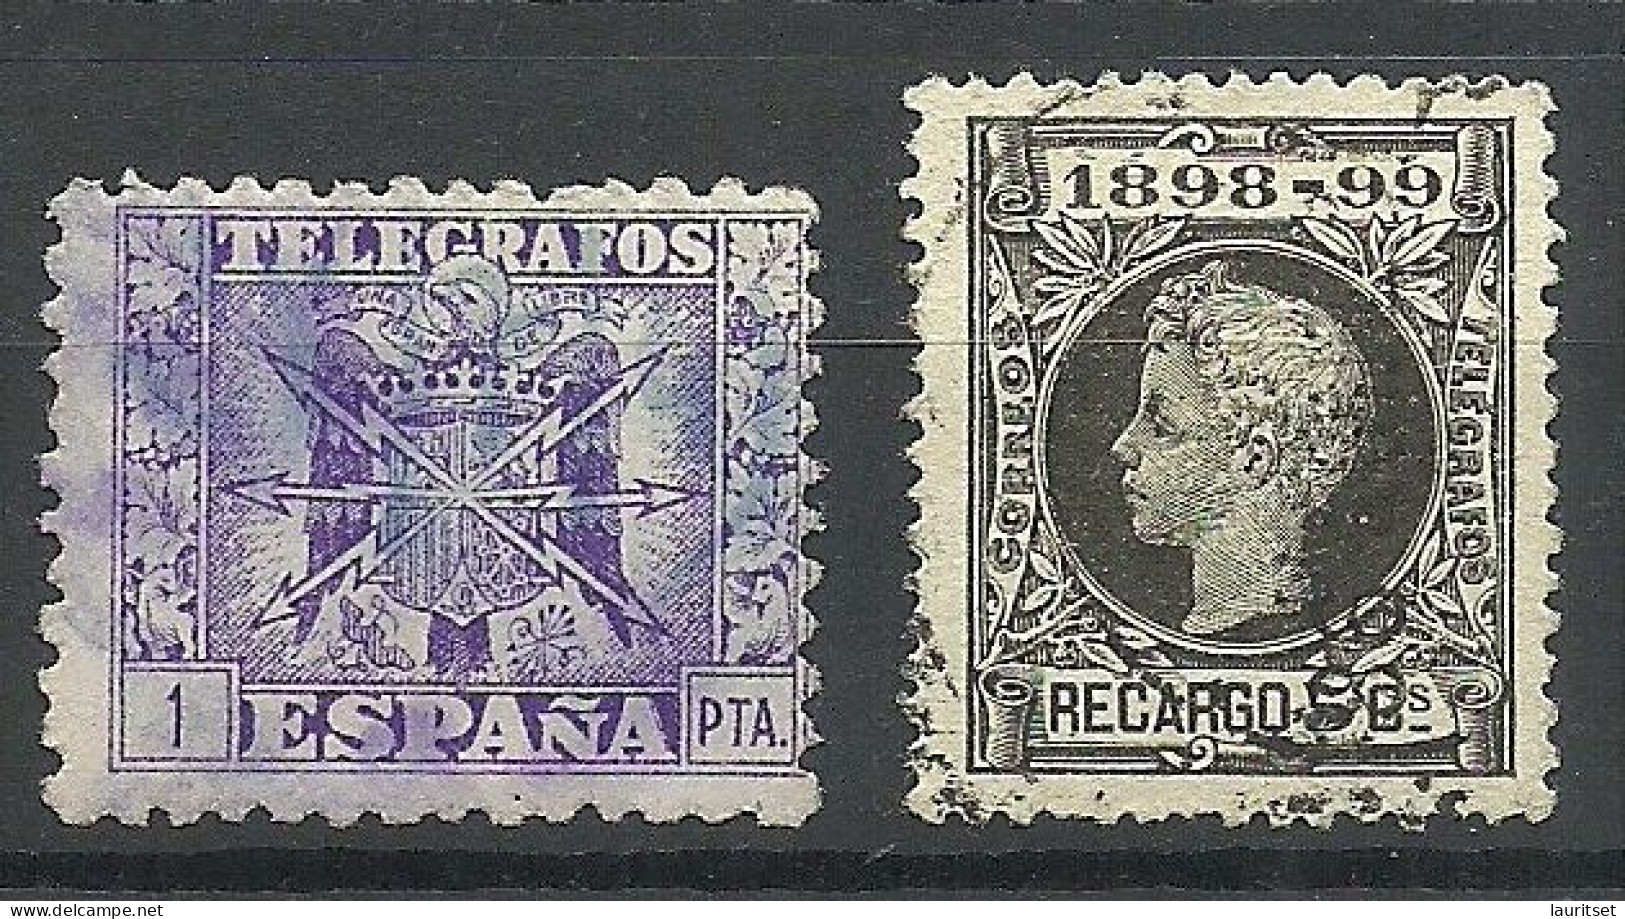 SPAIN Spanien Espana Telegrafos Telegraph Stamps Telegraphe, 2 Stamps, O - Telegramas